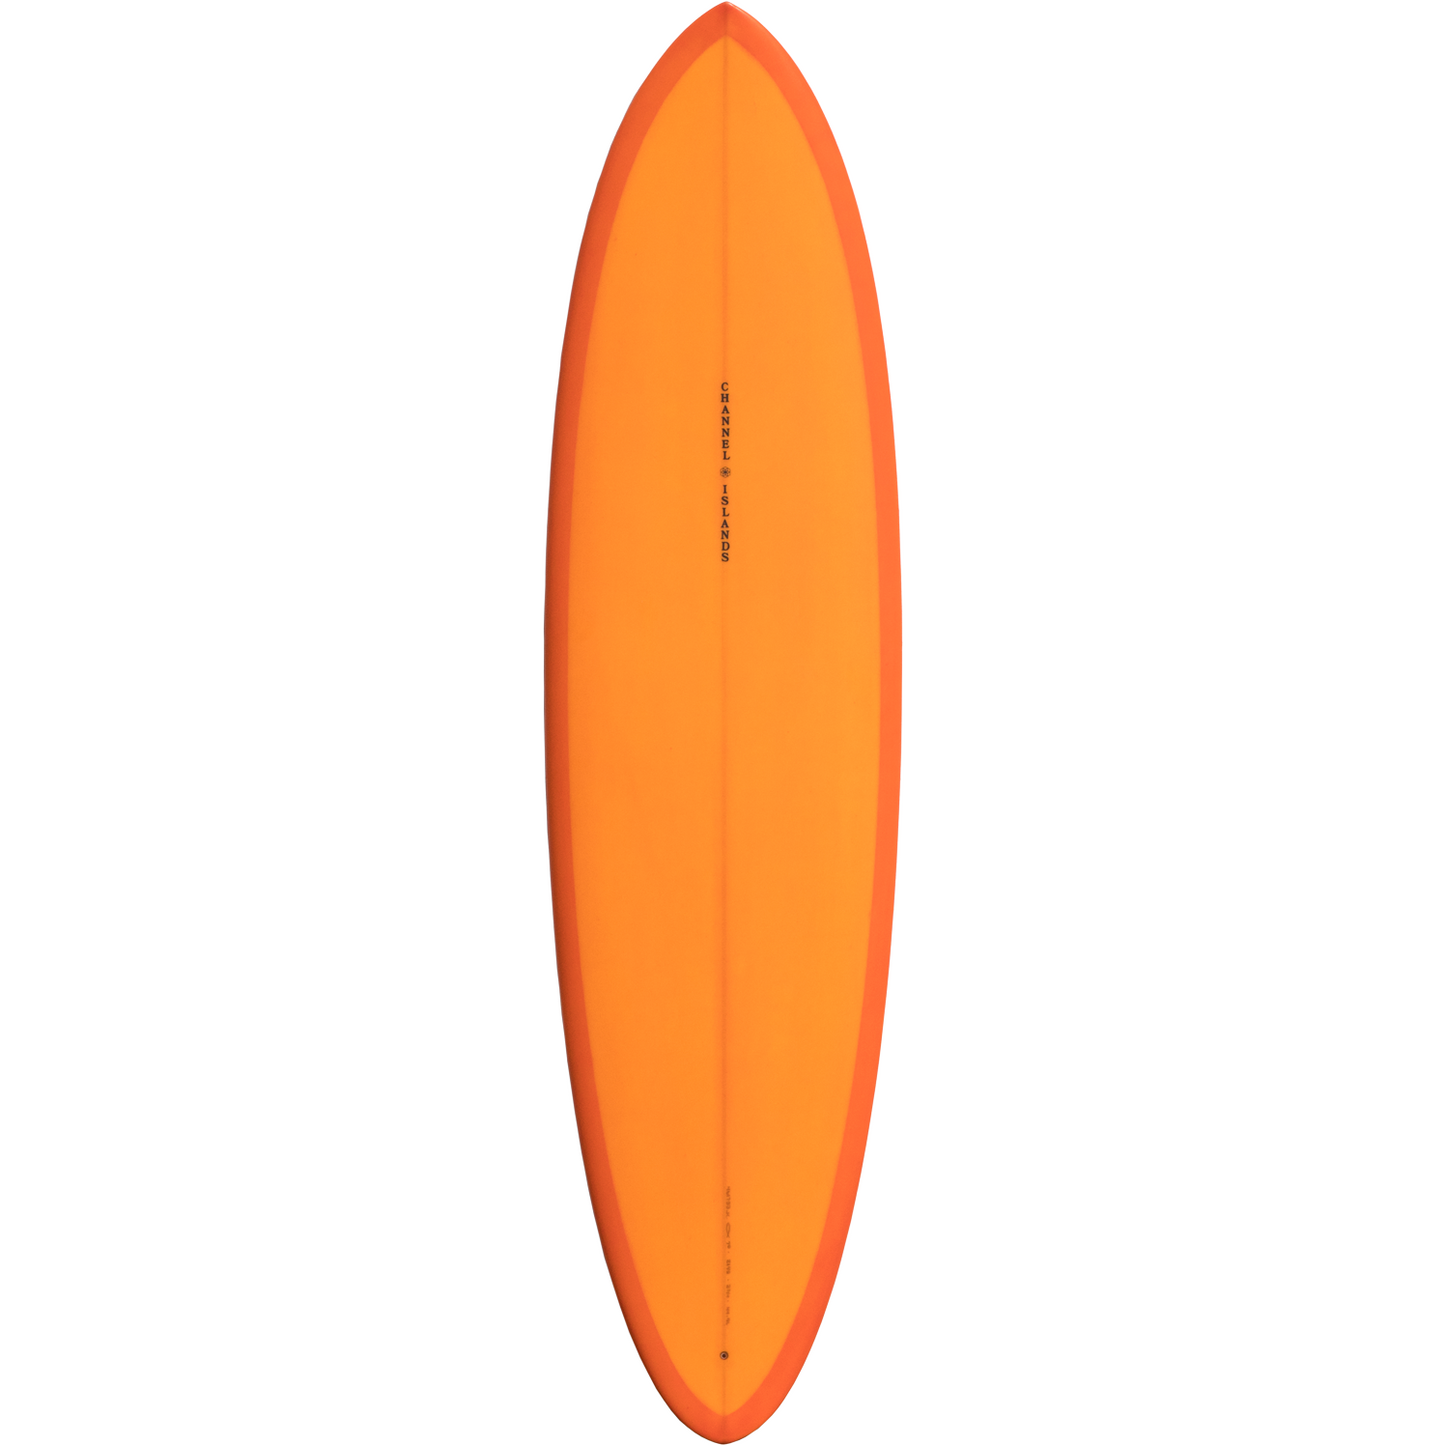 Channel Islands - Chanco Surfboard